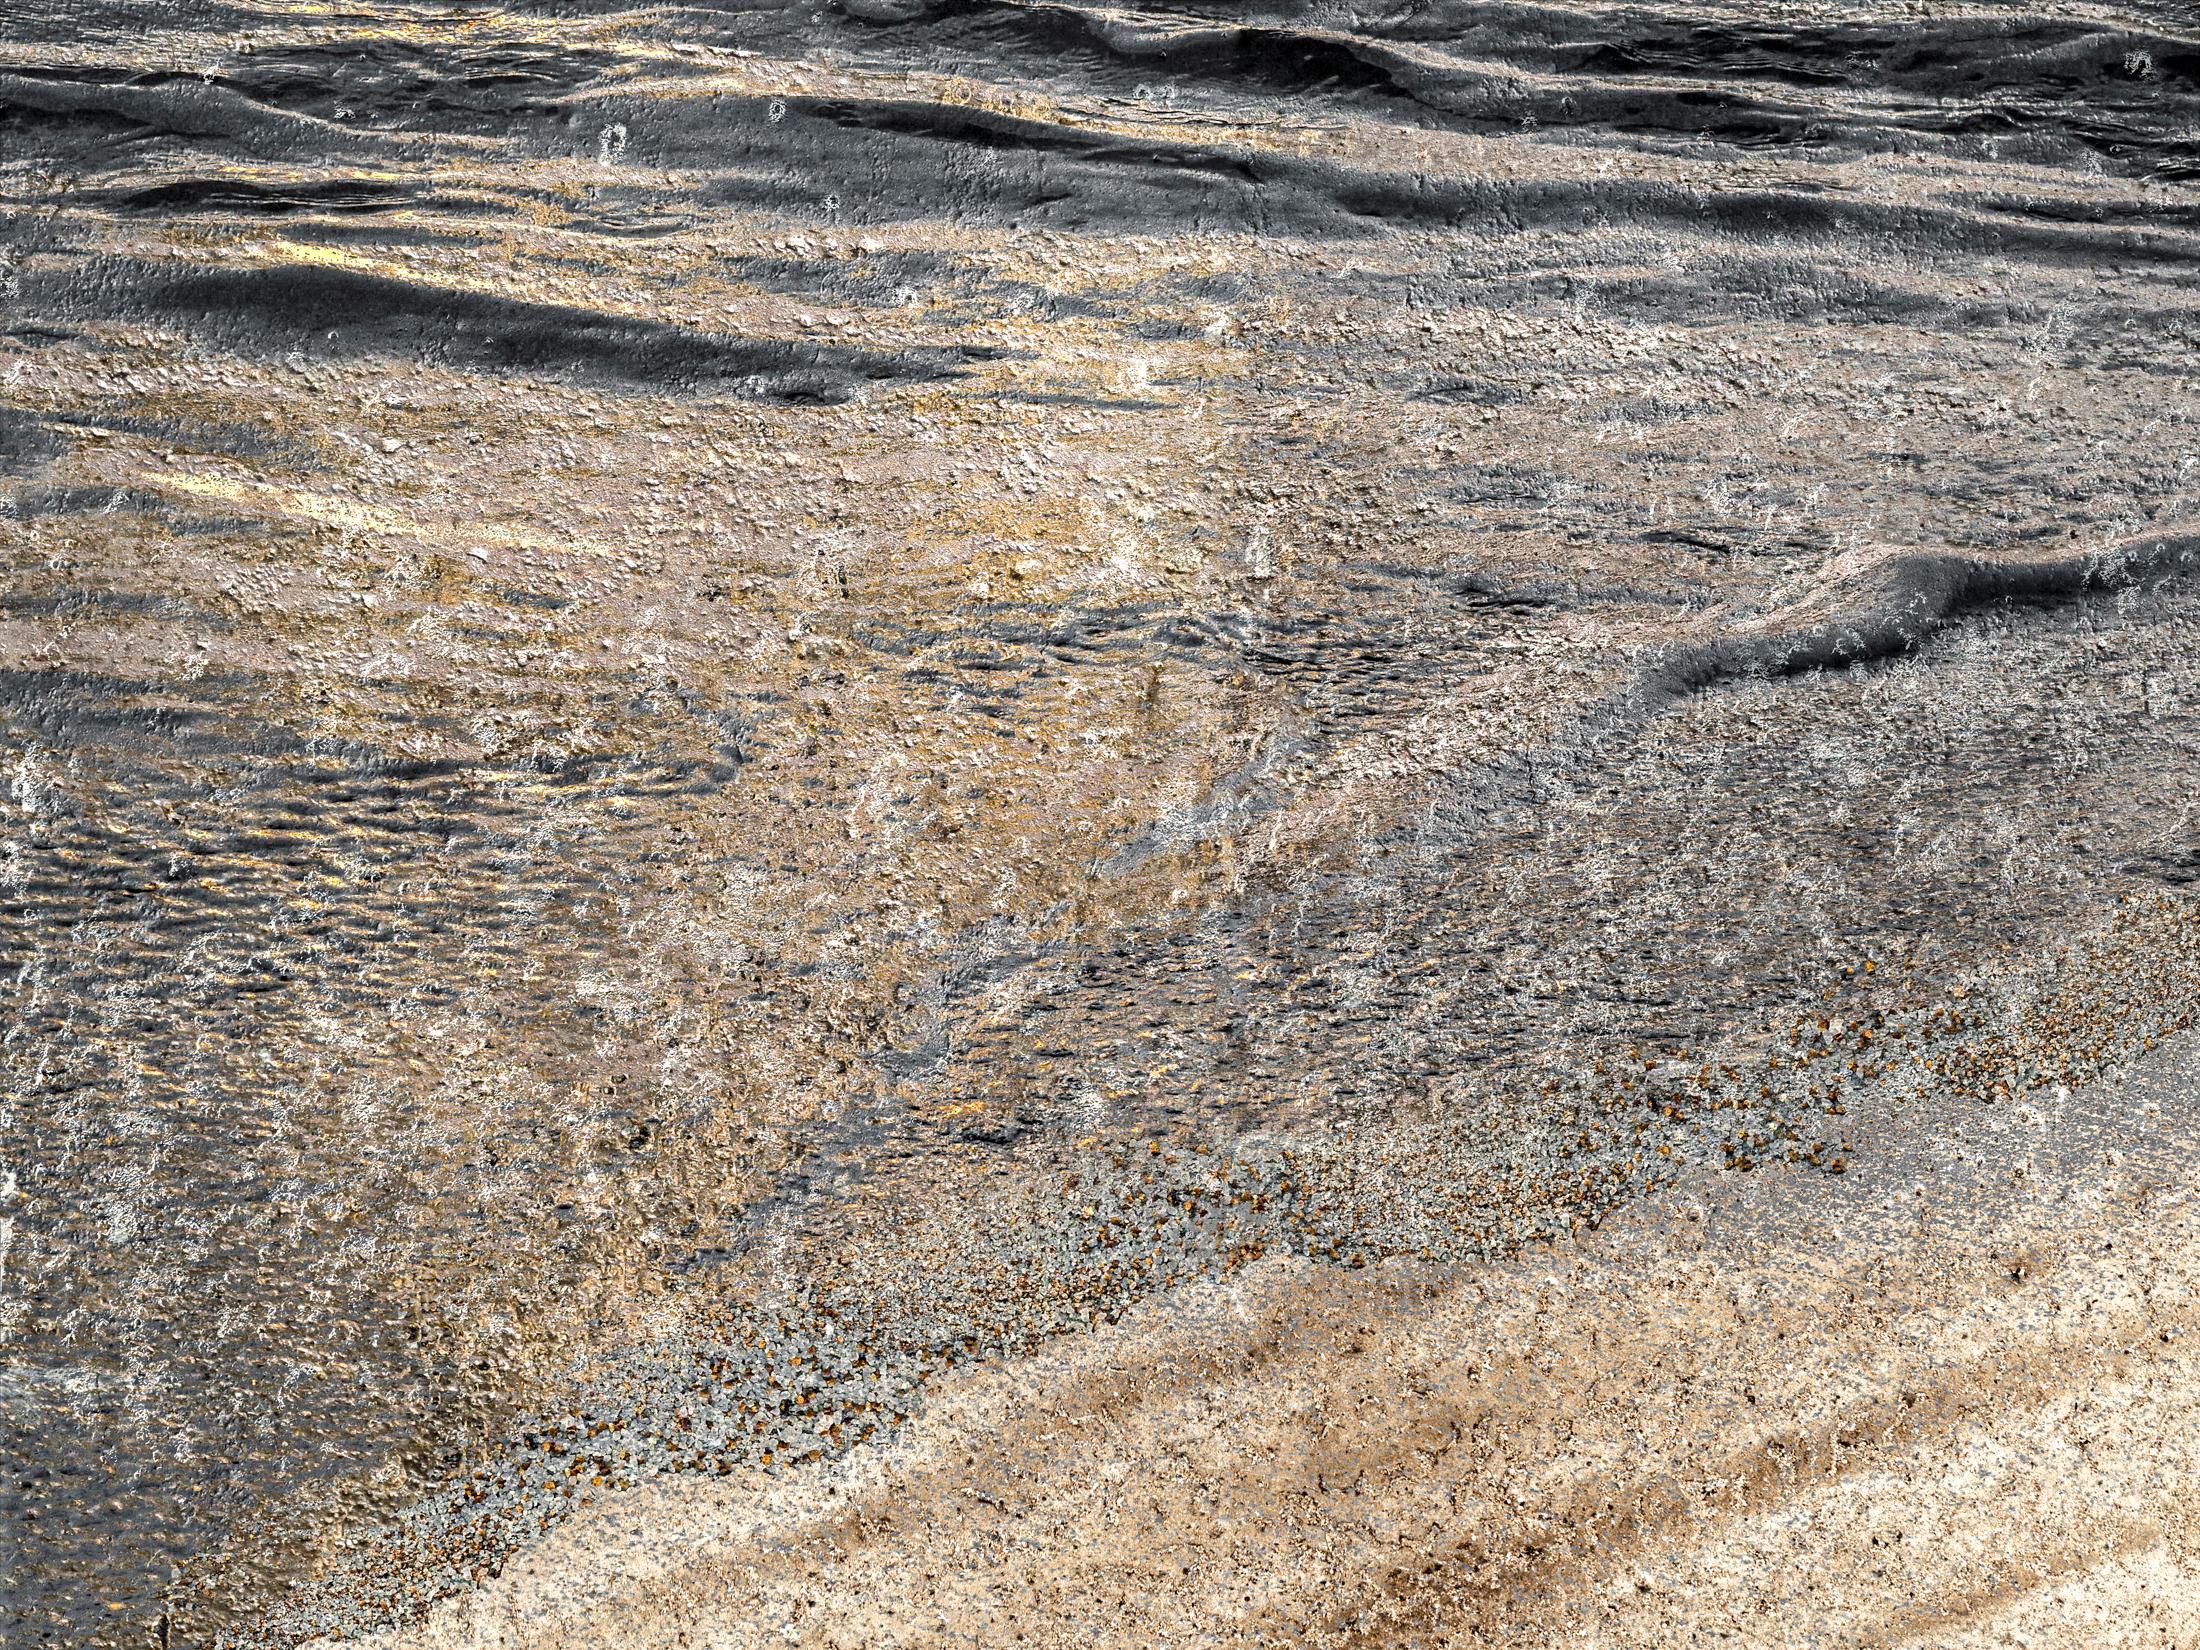 Jennifer McKinnon Abstract Photograph - Uncontained Consumption: Sand Dollars - composite photo, beachscape, landscape